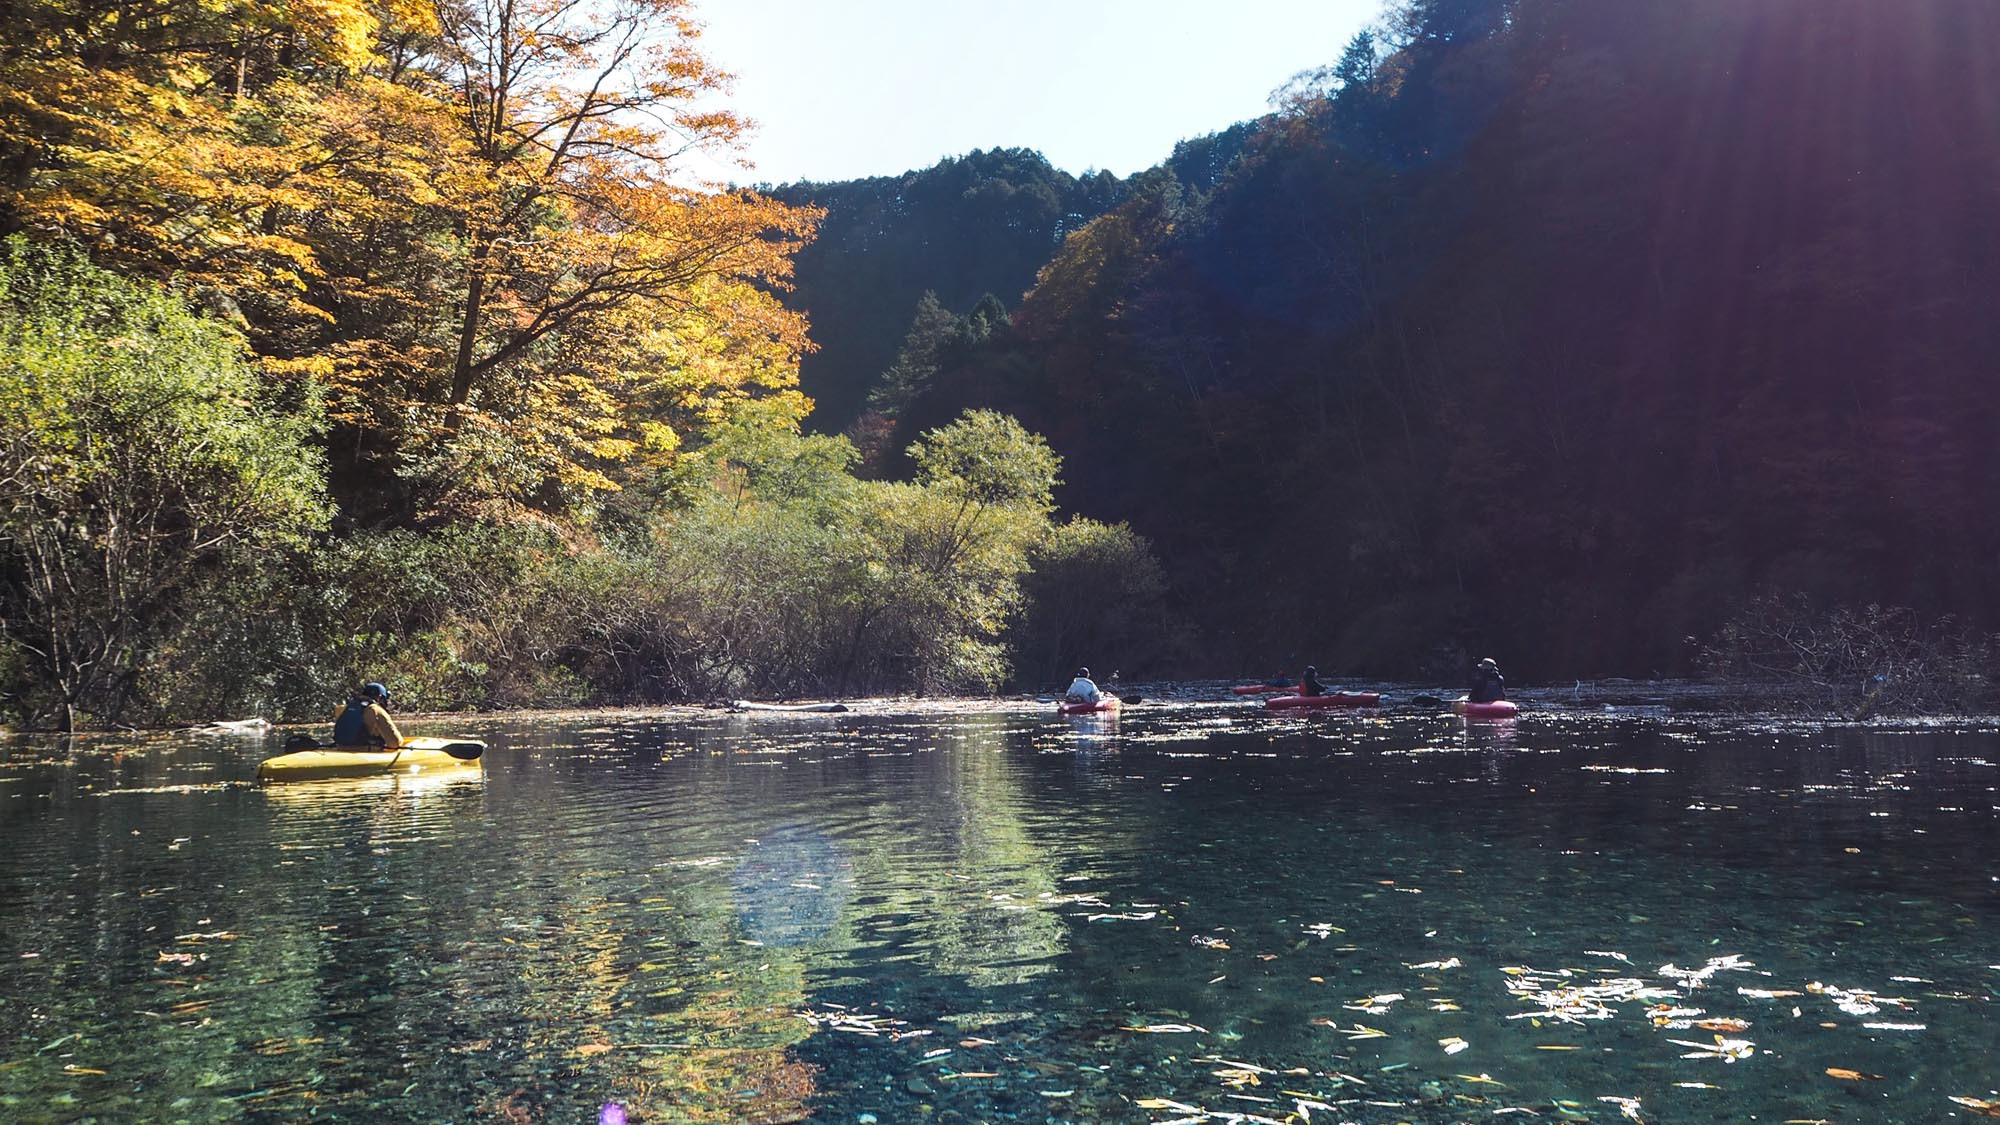 奥木曽湖カヌー体験(紅葉シーズン)車で約30分